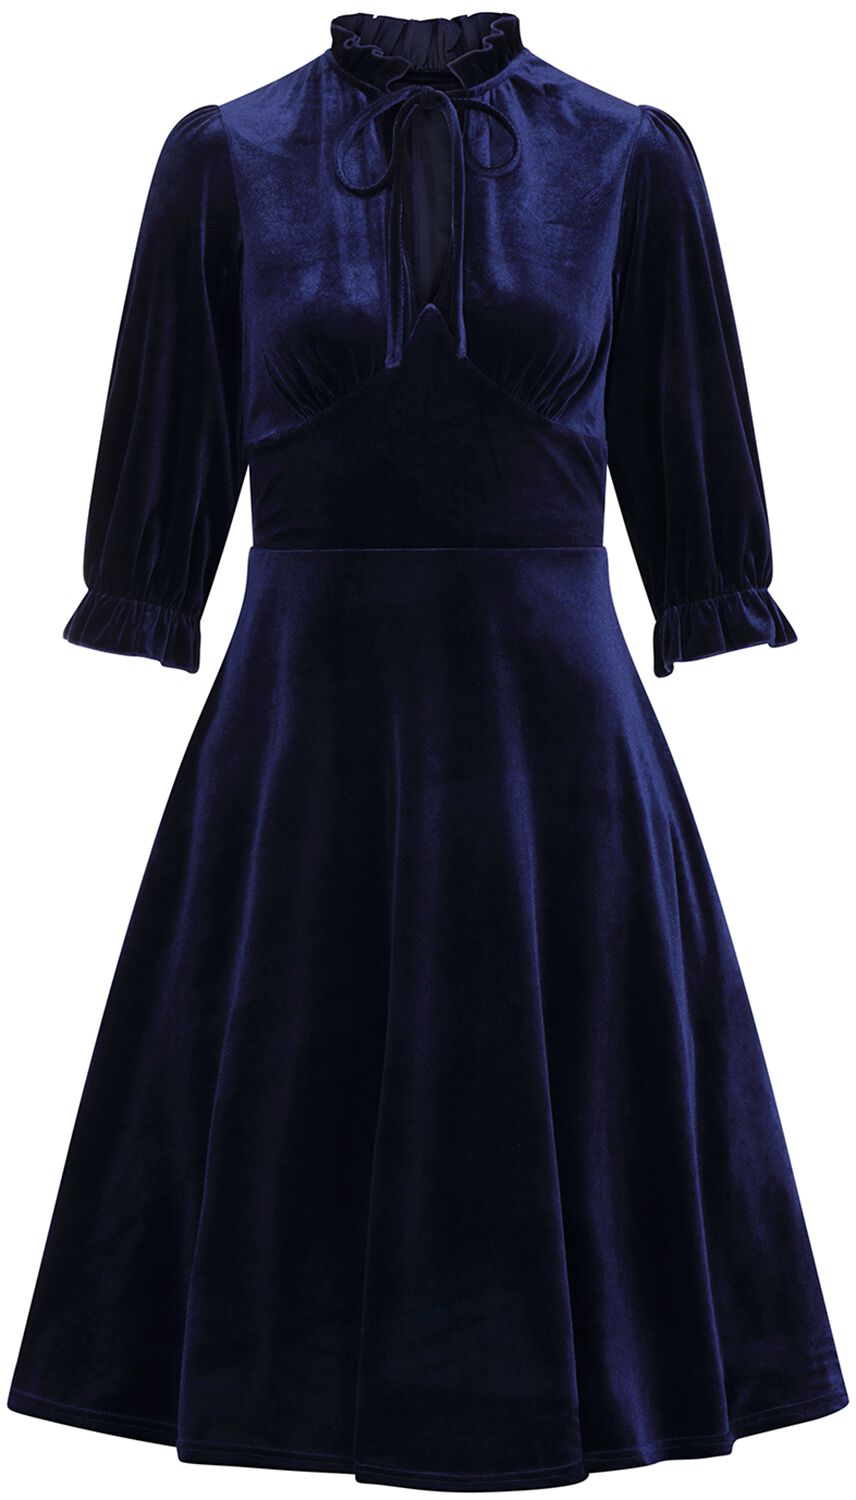 Hell Bunny - Rockabilly Kleid knielang - Orion Dress - XS bis 4XL - für Damen - Größe 3XL - blau von hell bunny